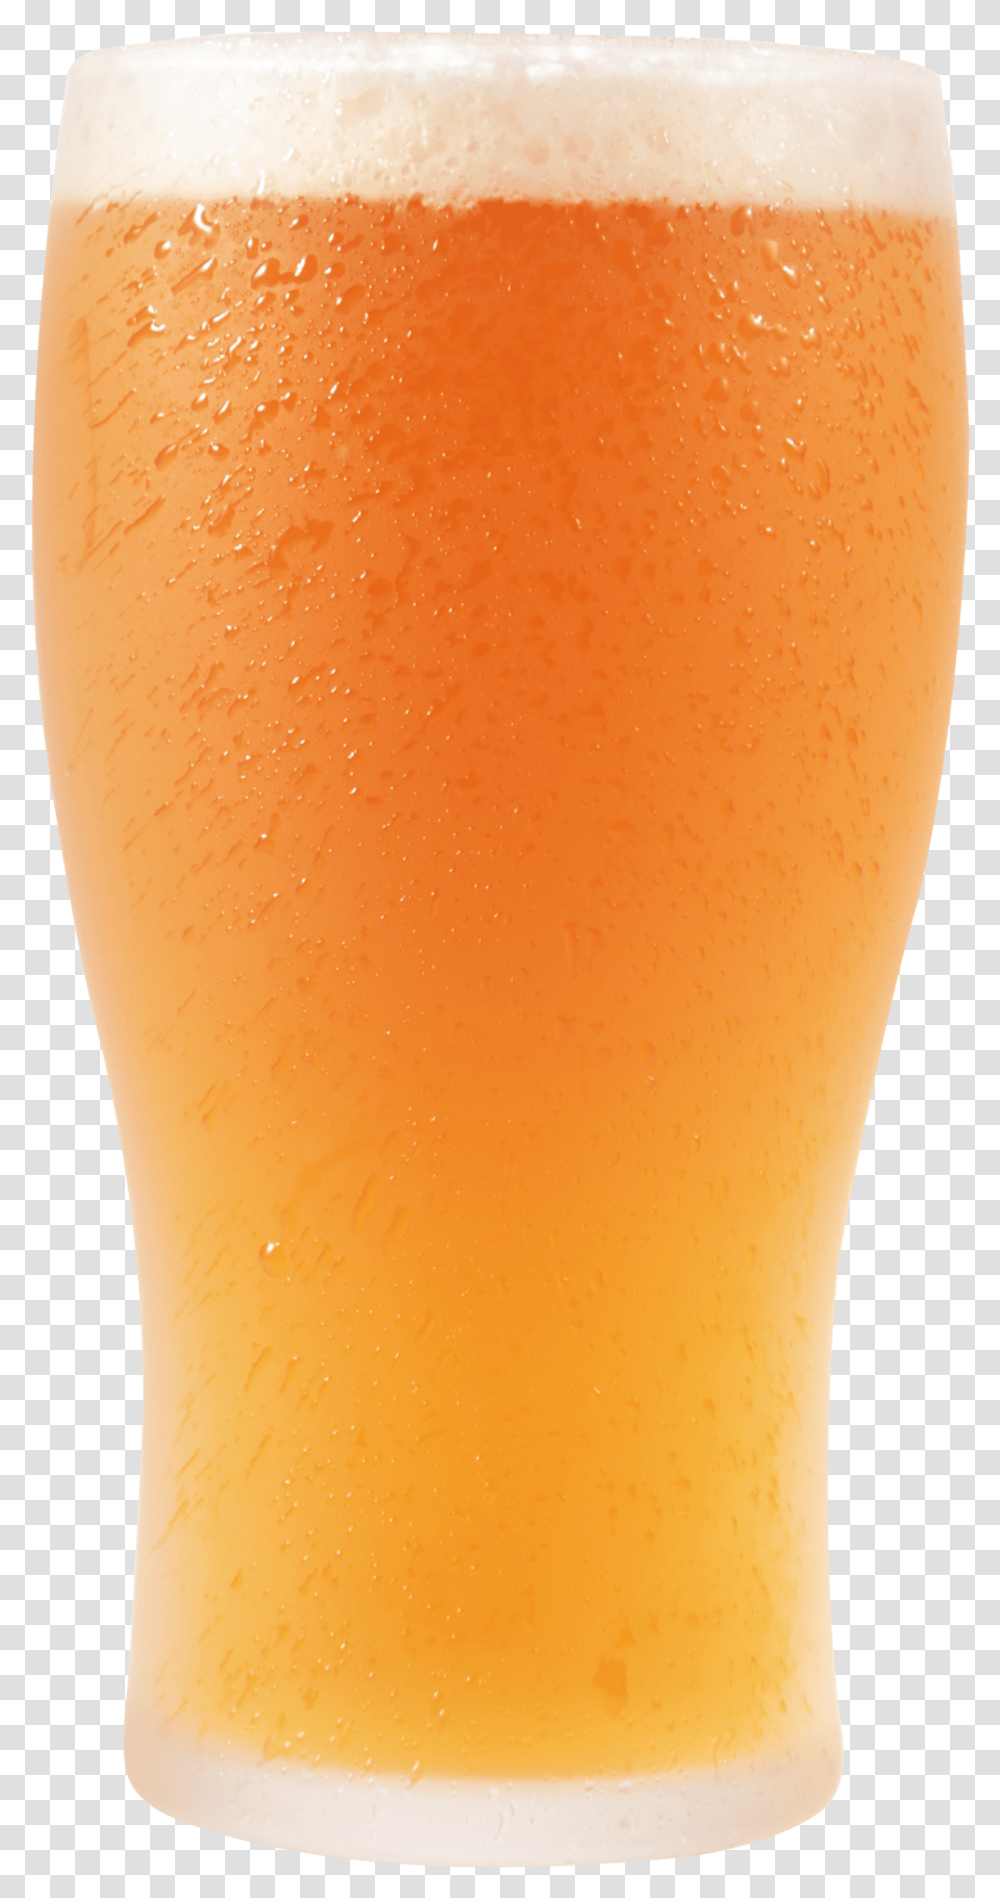 Beer Image Pint Of Beer, Alcohol, Beverage, Drink, Glass Transparent Png